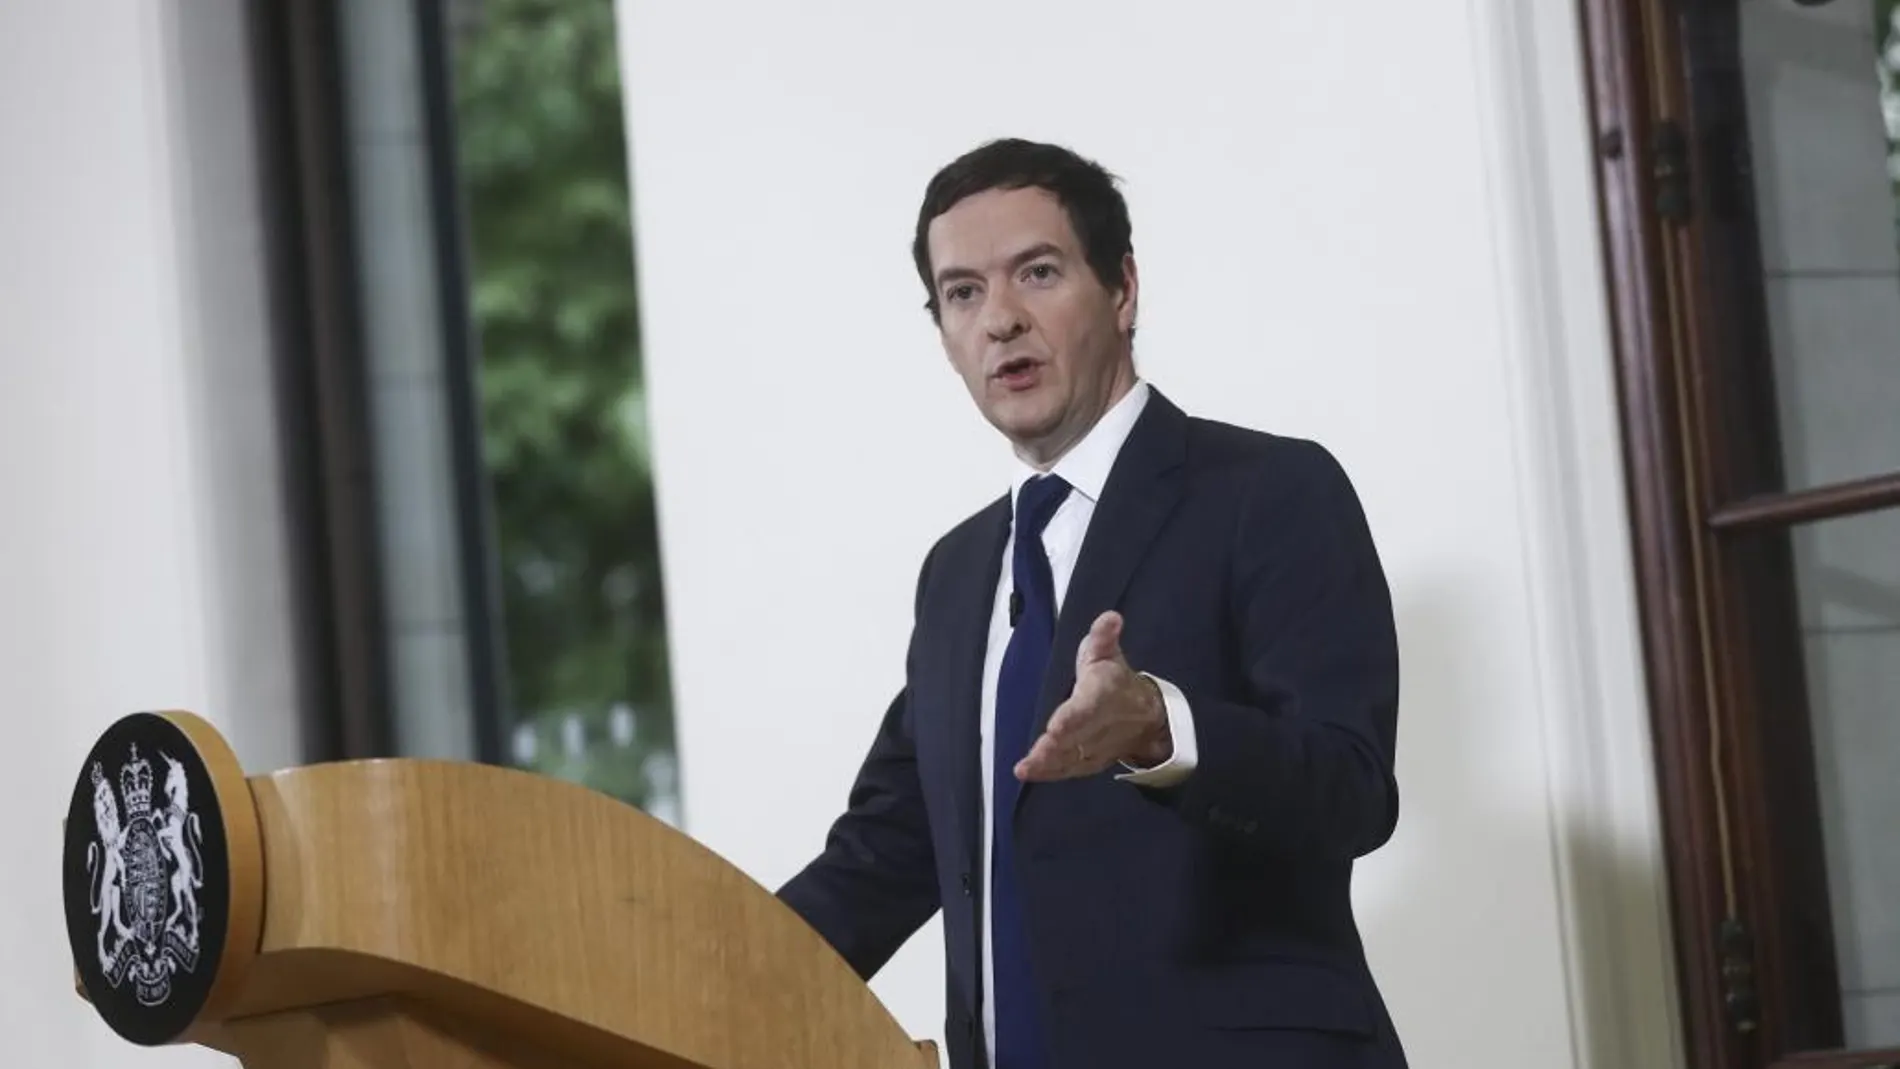 El ministro británico de Economía, George Osborne